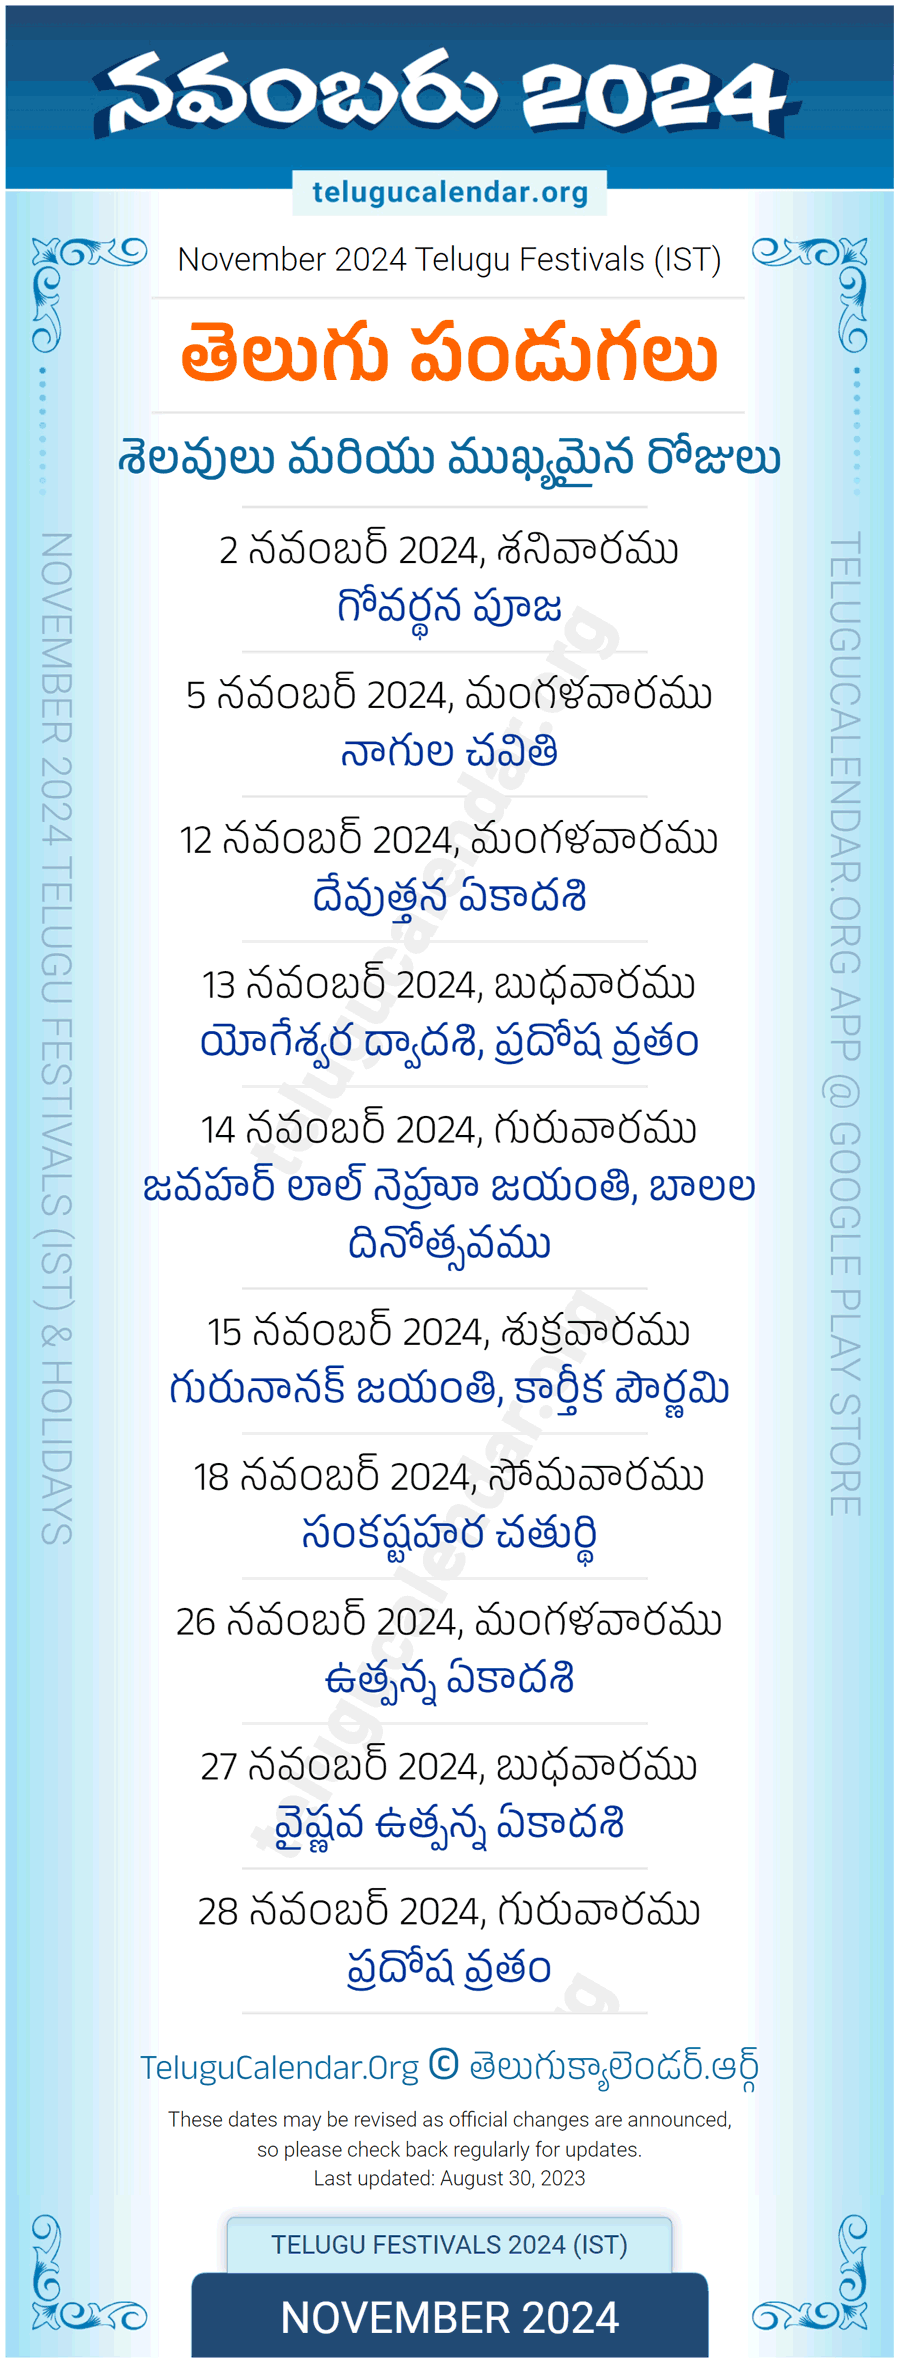 Telugu Festivals 2024 November